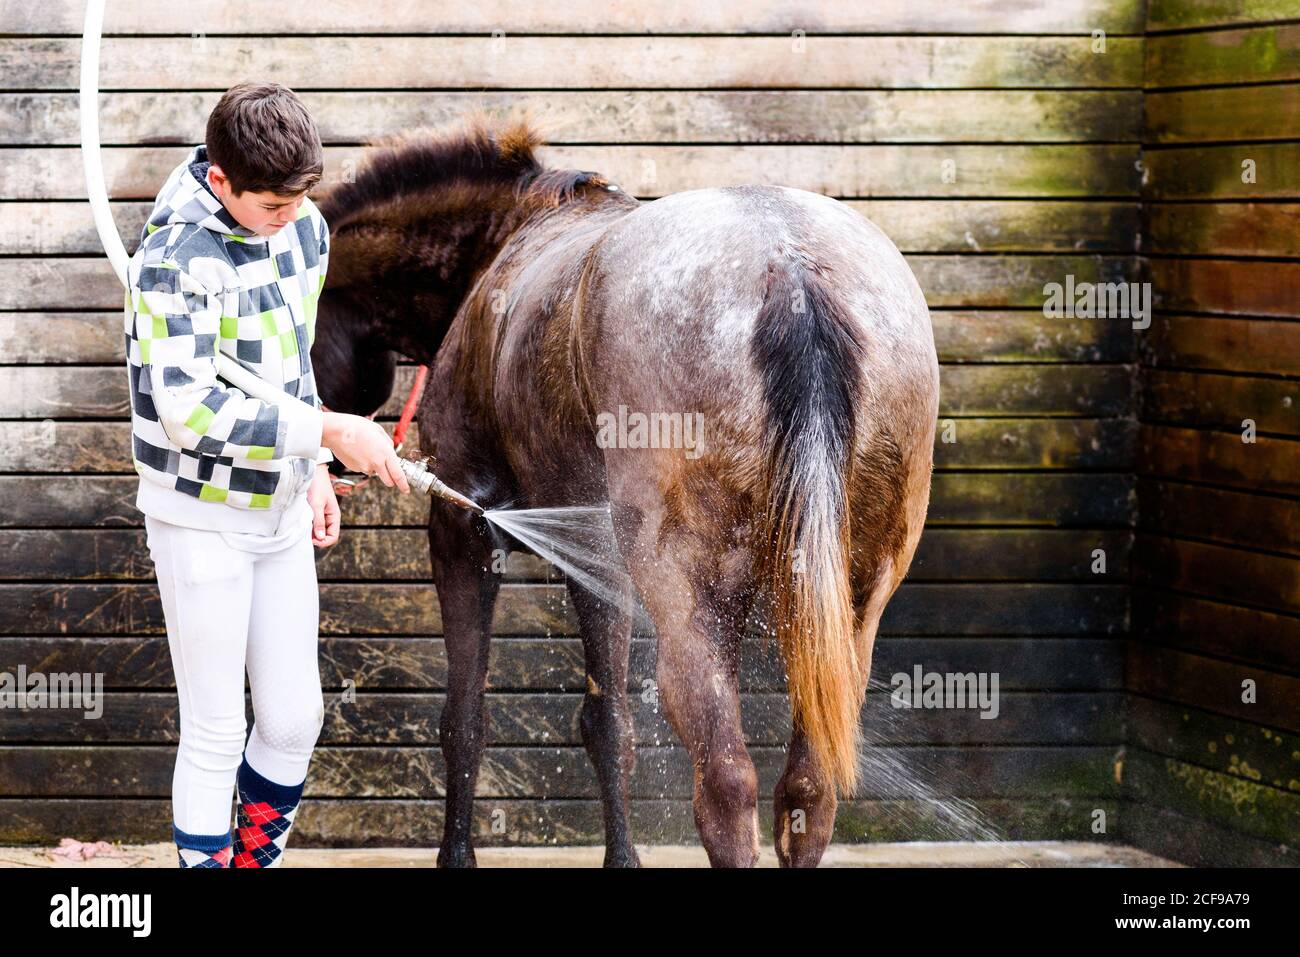 Teen junge mit Schlauch zu Mantel von Roan Pferd waschen Gegen die hölzerne Wand des Stalls nach dem Reitunterricht in Reitschule Stockfoto